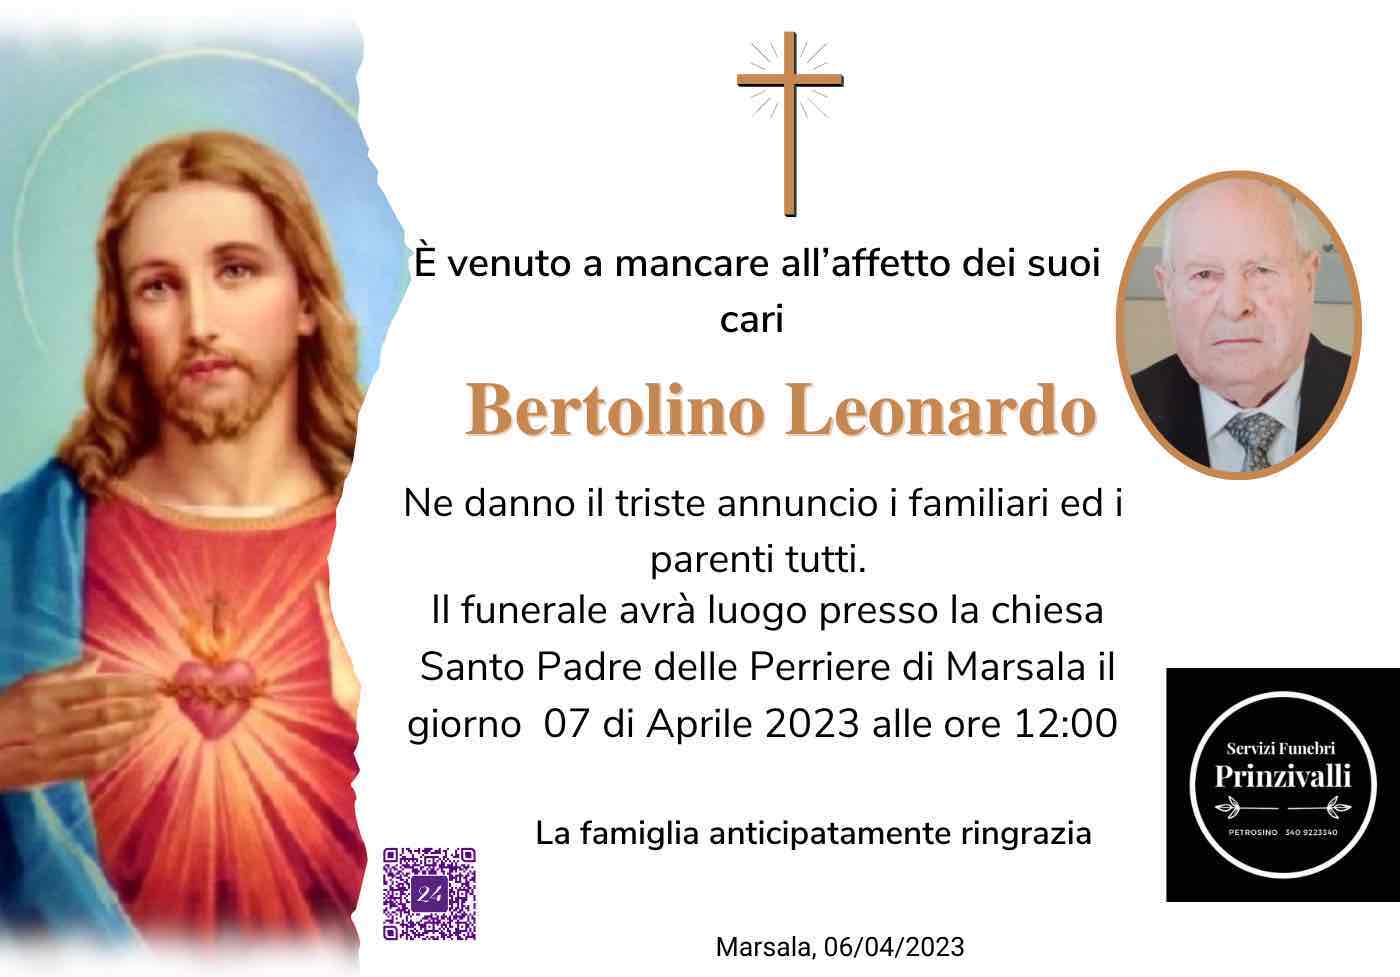 Leonardo Bertolino